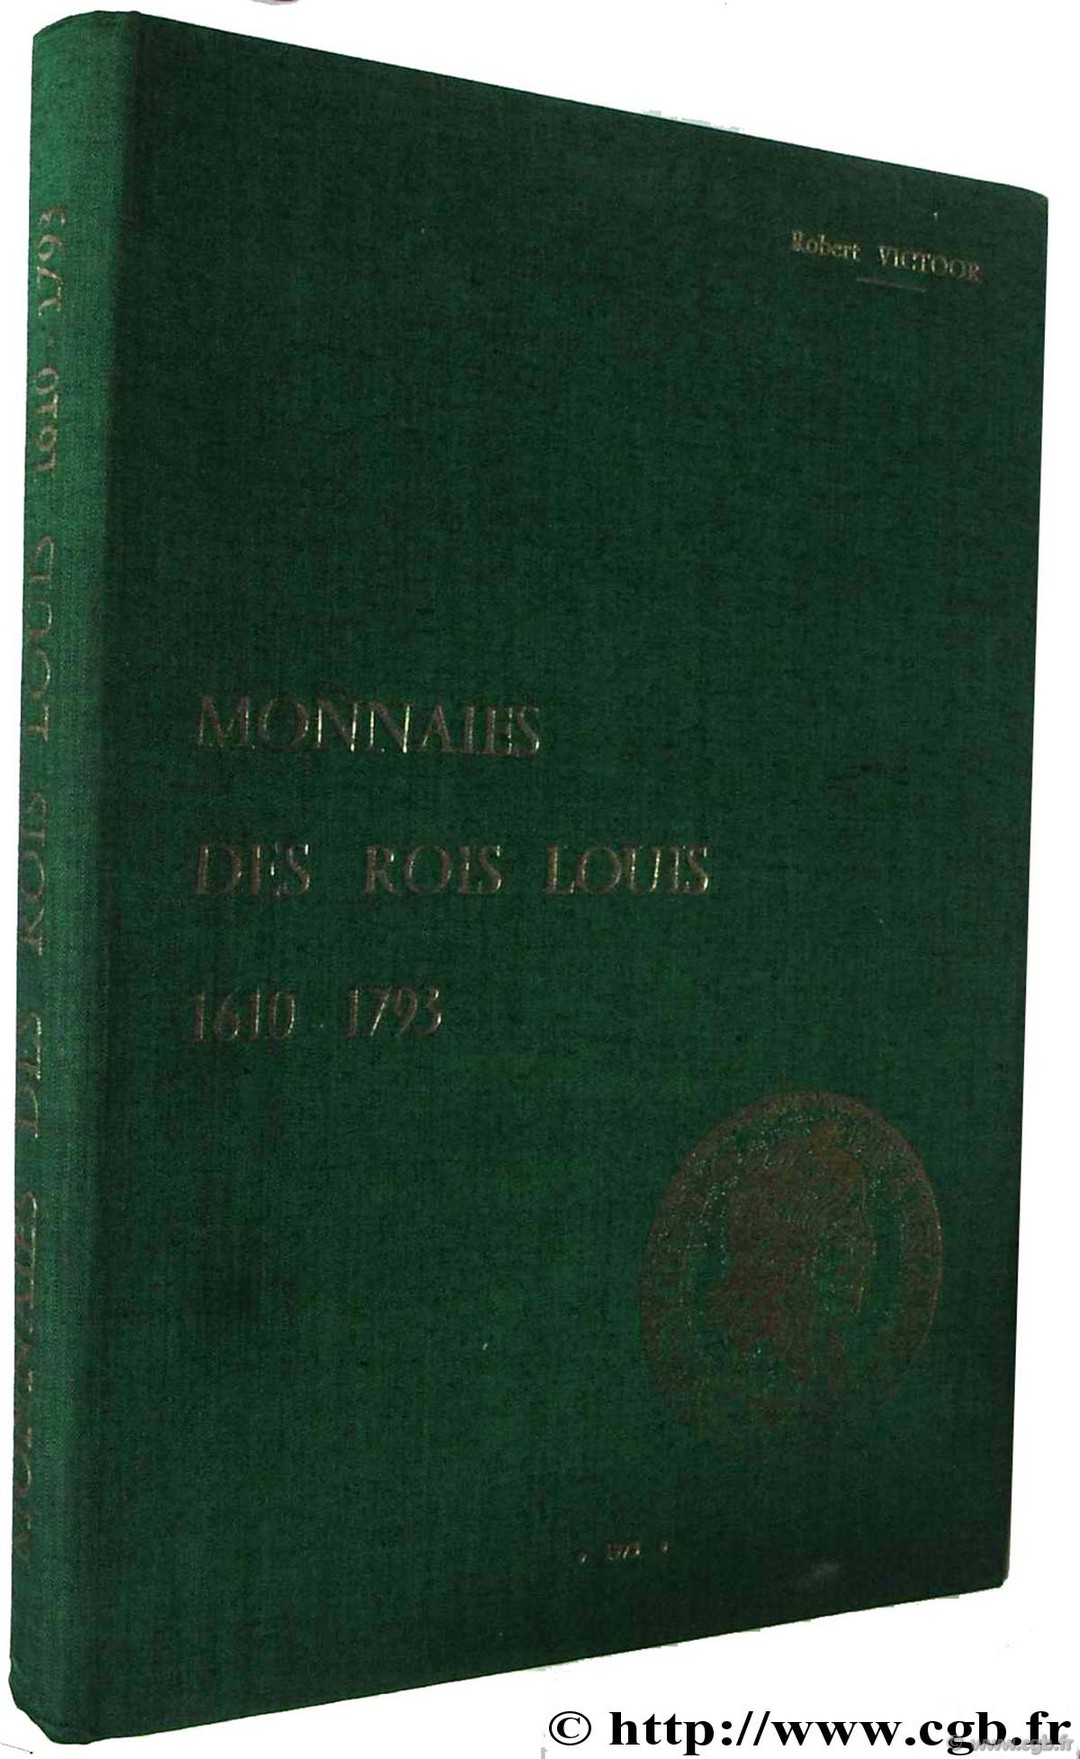 Monnaies des rois Louis 1610 - 1793 VICTOOR R.